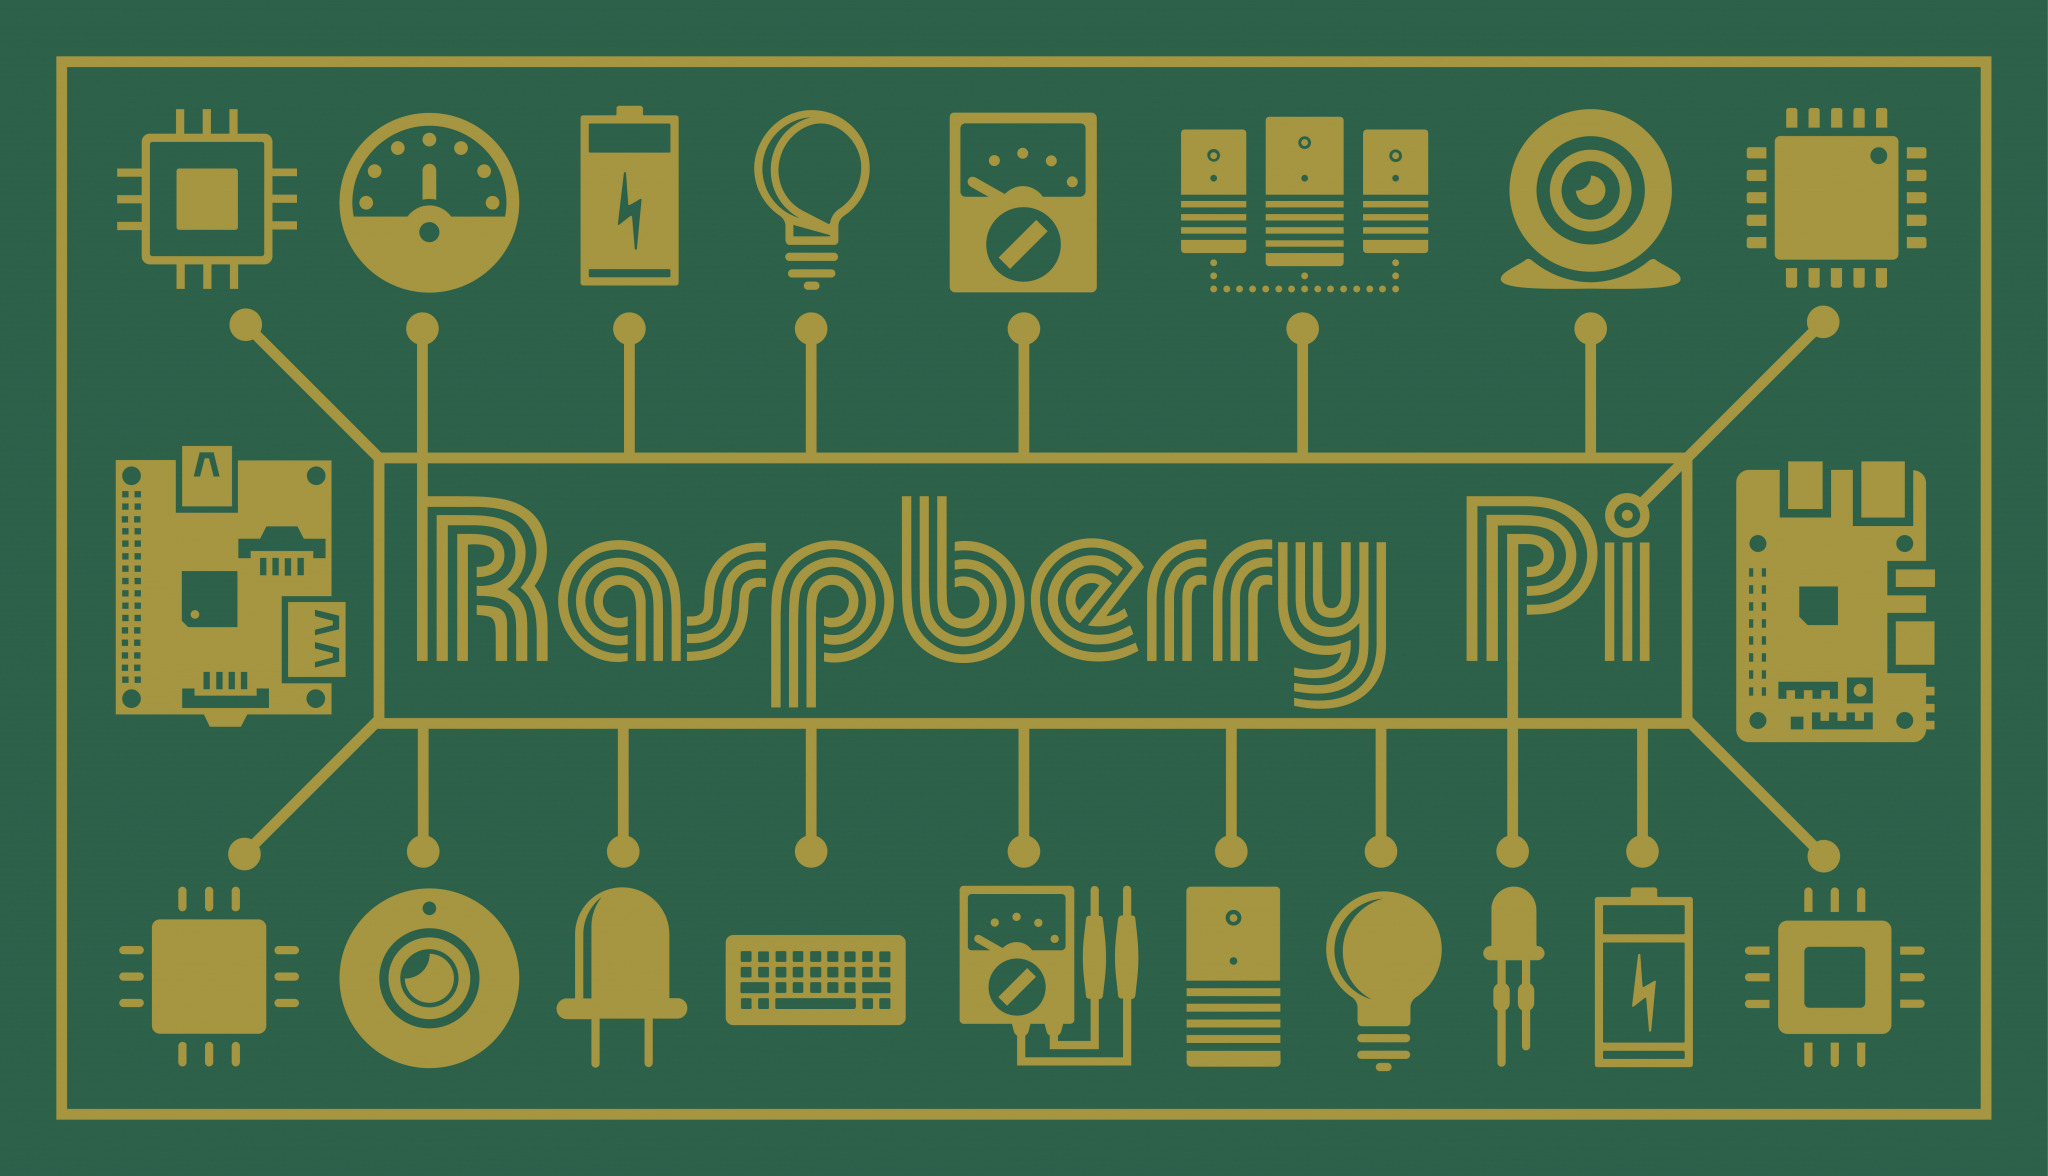 Raspberry Pi（ラズパイ）とは？ 価格や事例、注意点を押さえ、低コストにIoT開発を始めよう！ | データで越境者に寄り添うメディア  データのじかん